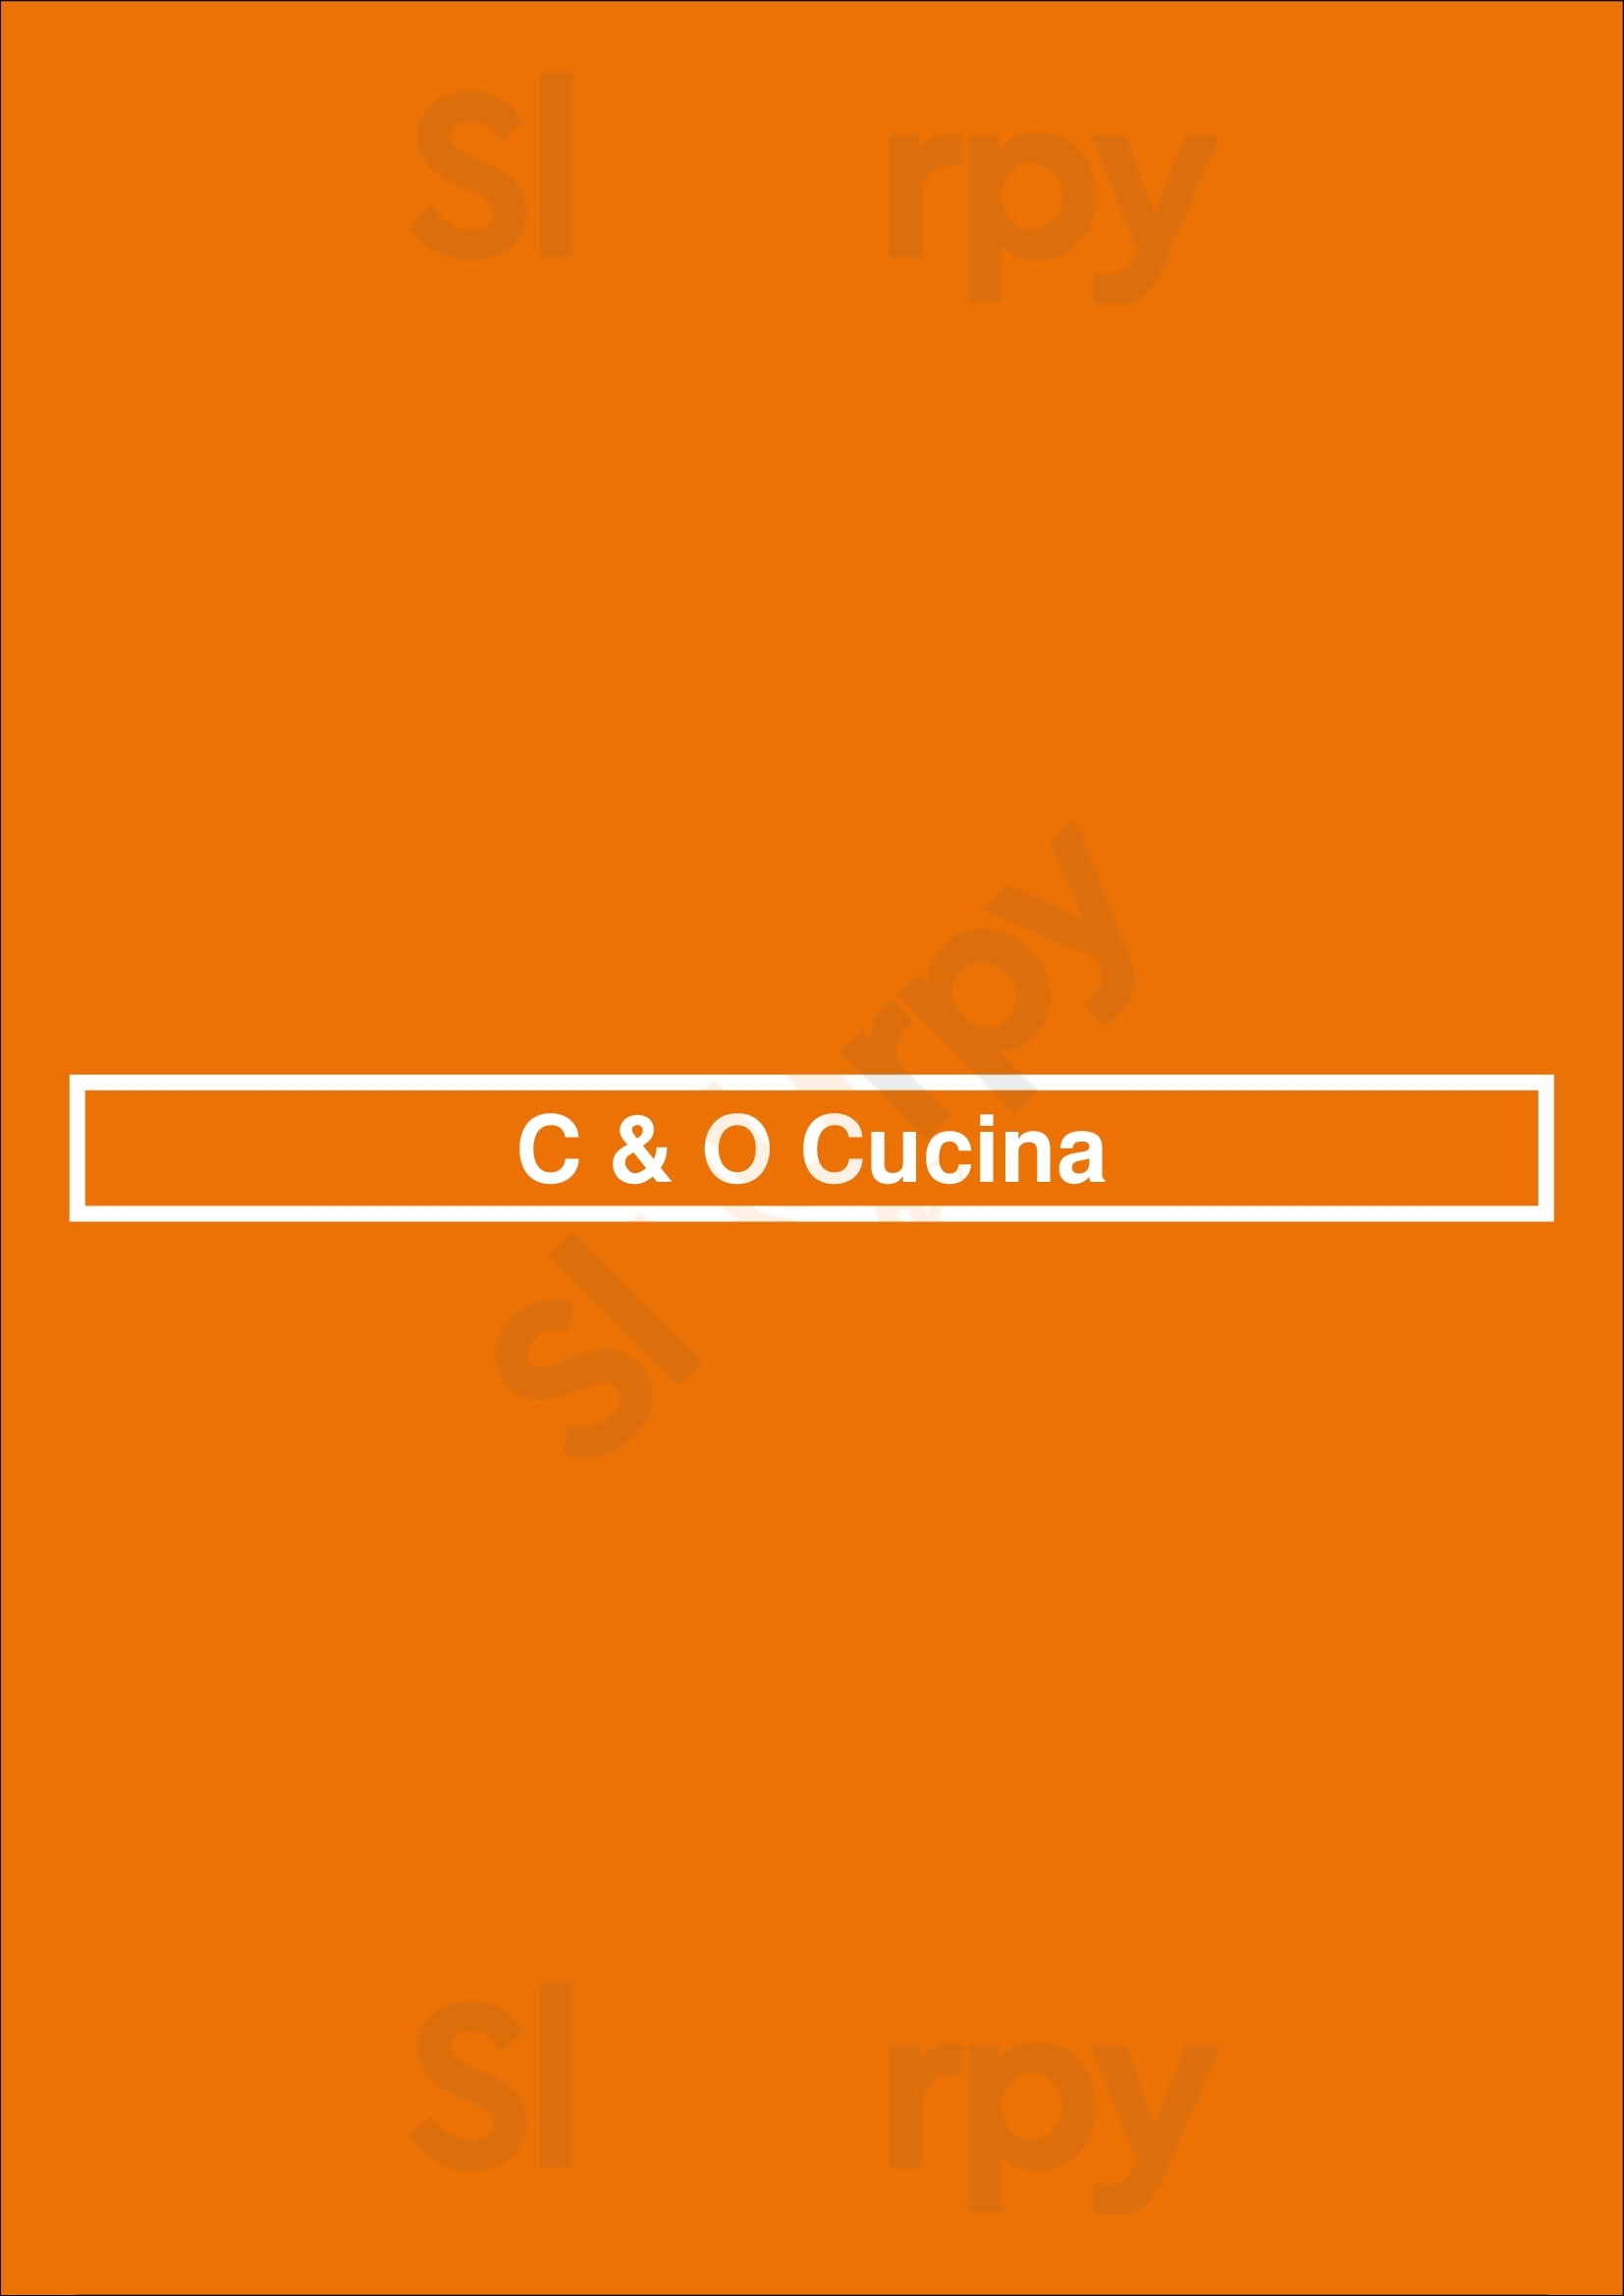 C & O Cucina Marina del Rey Menu - 1